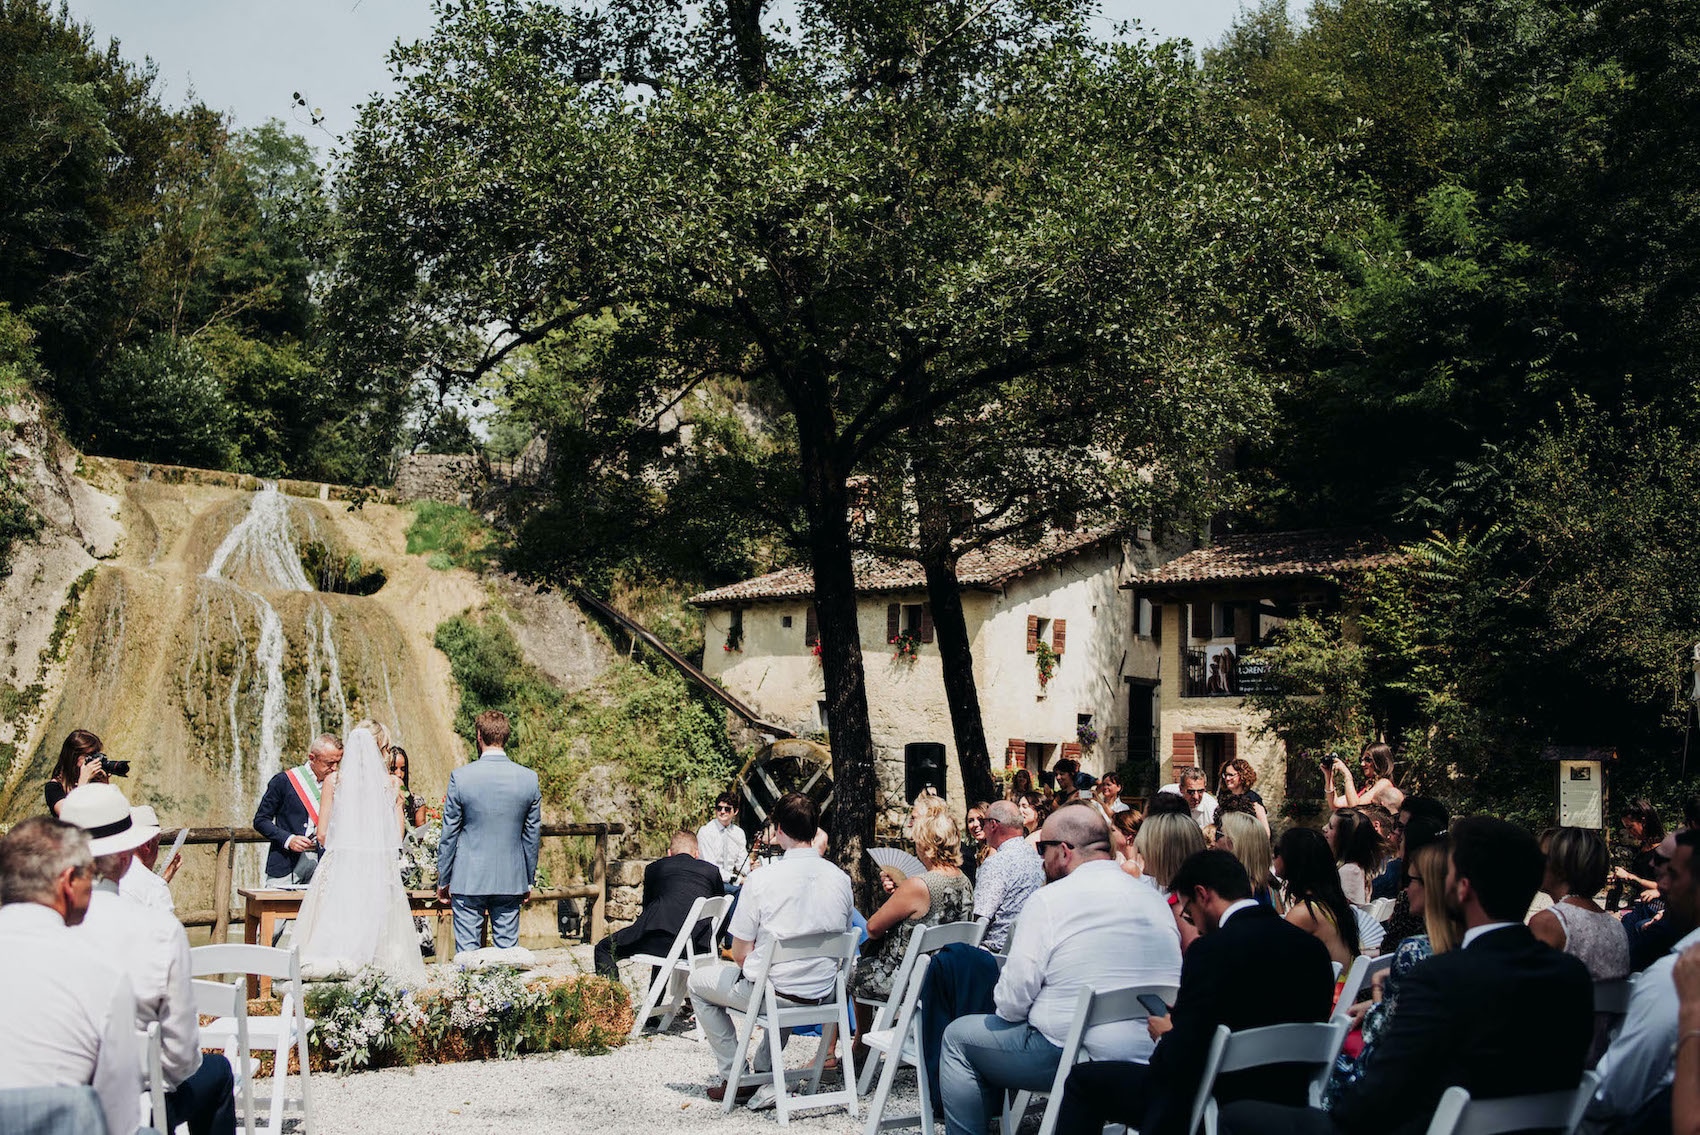 Couple getting married at Molinetto della Croda